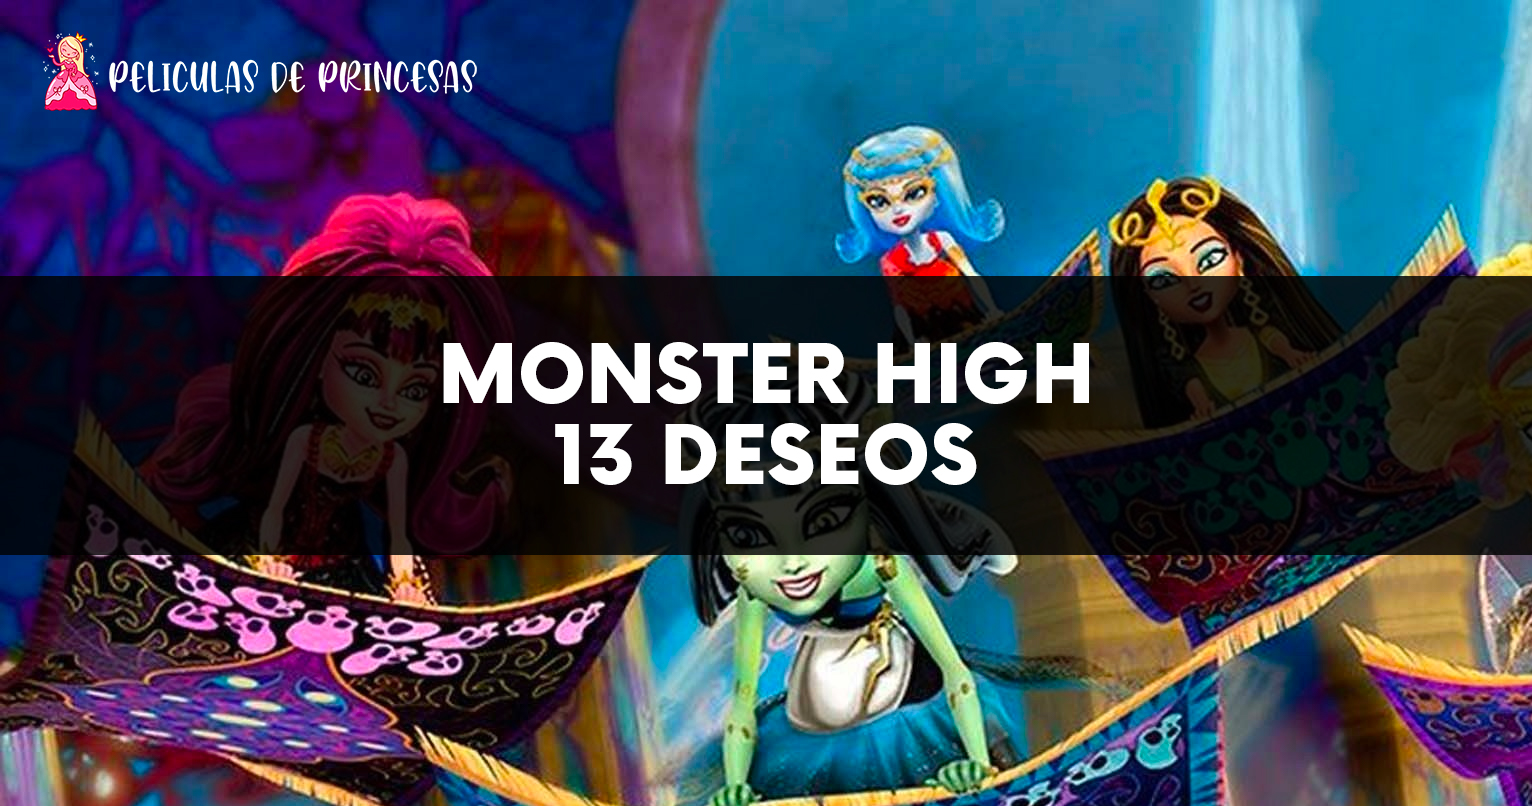 Monster High-13 deseos – Película completa Gratis Online